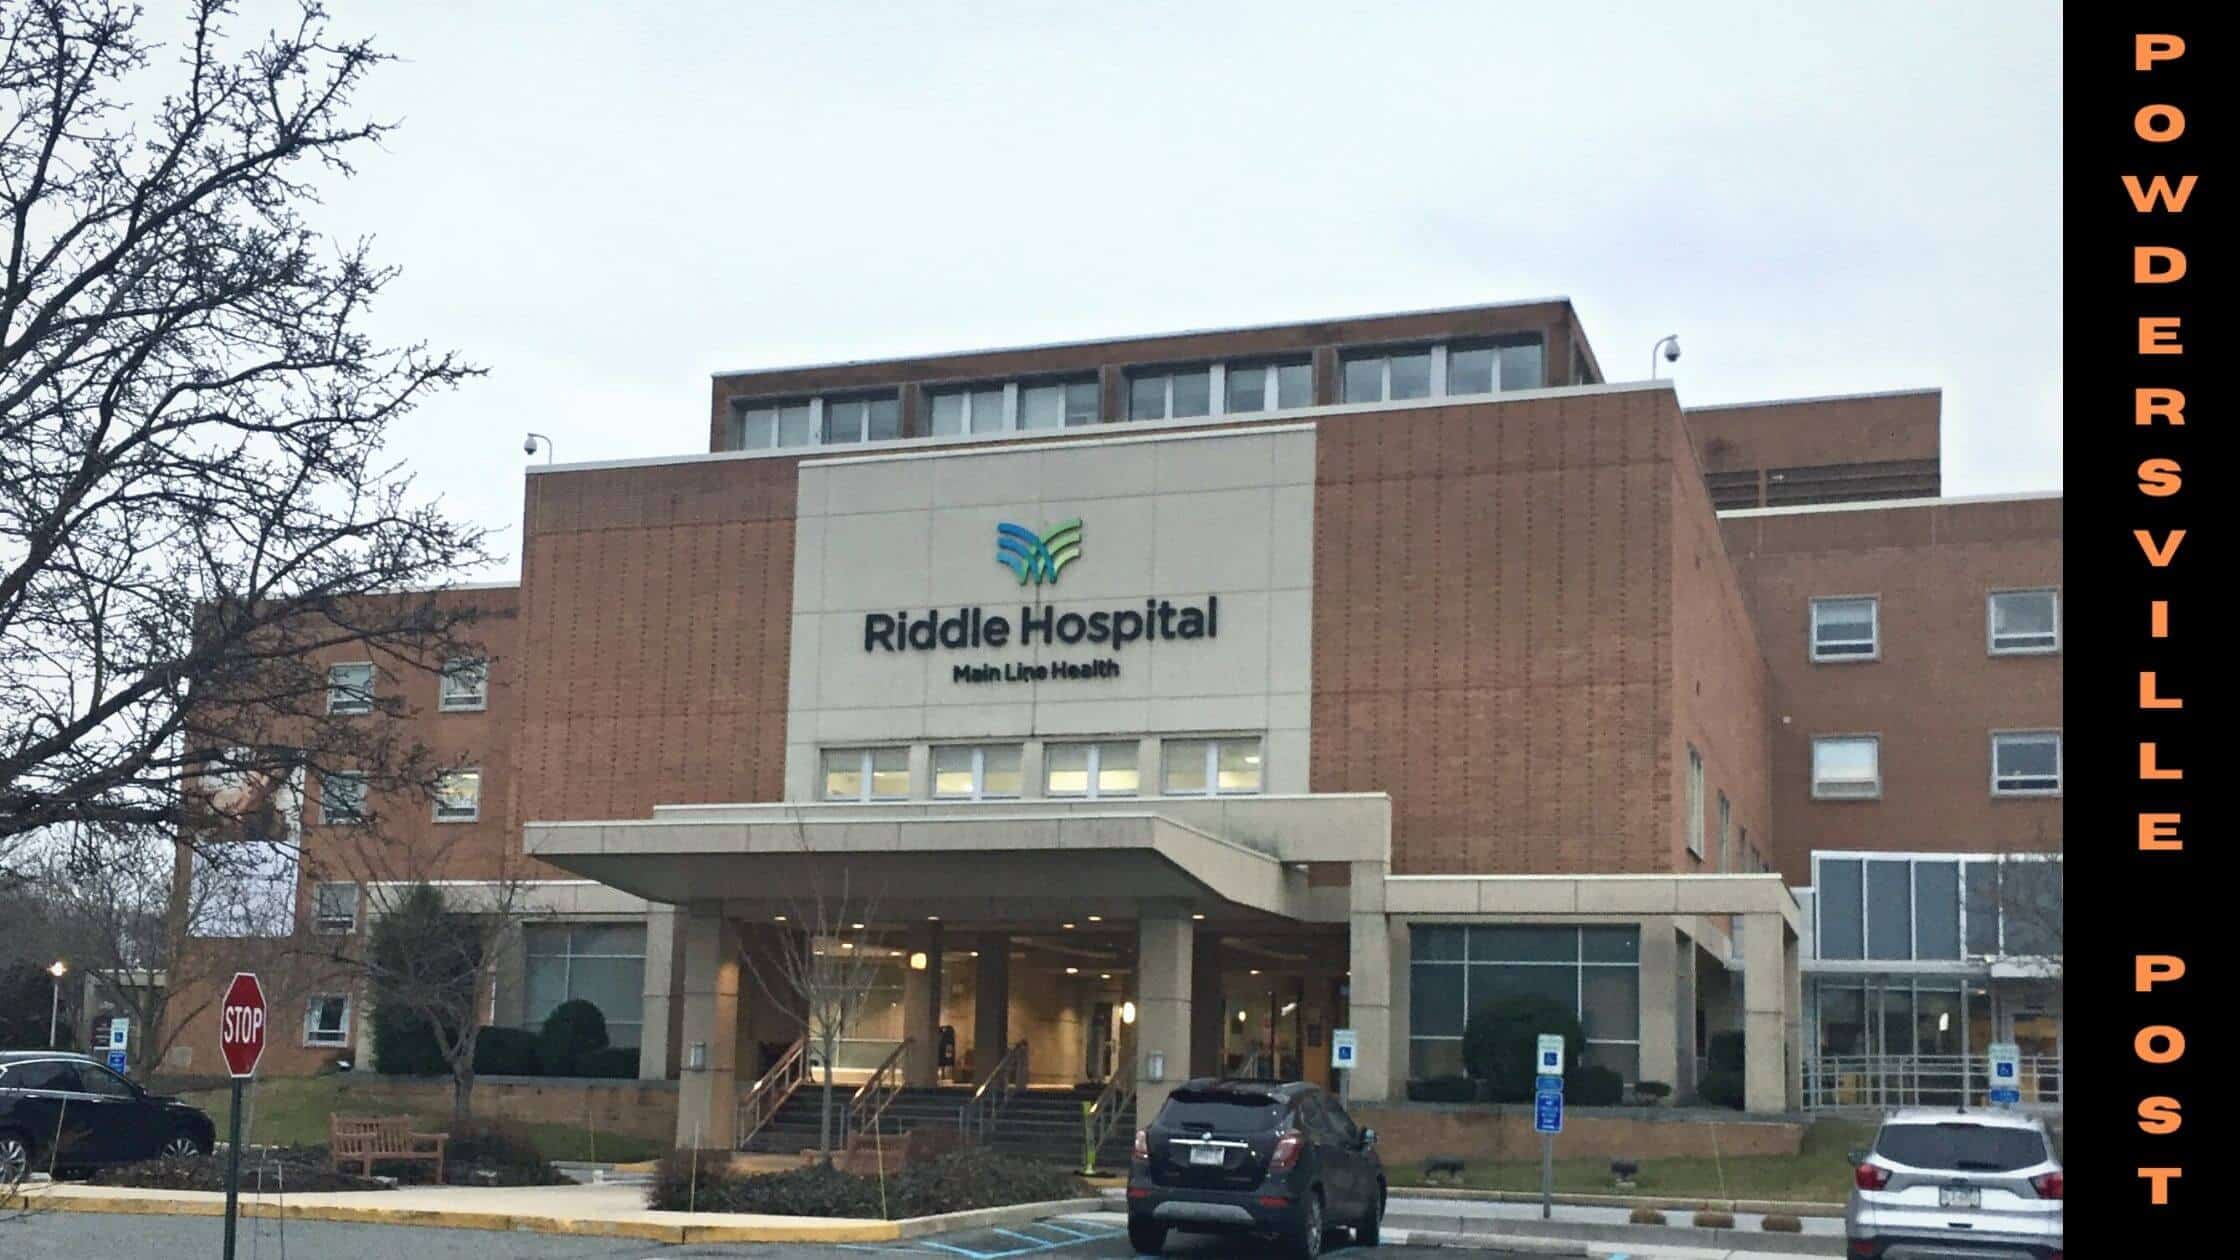 Riddle Hospital & Lankenau Medical Center Win Healthgrades Awards